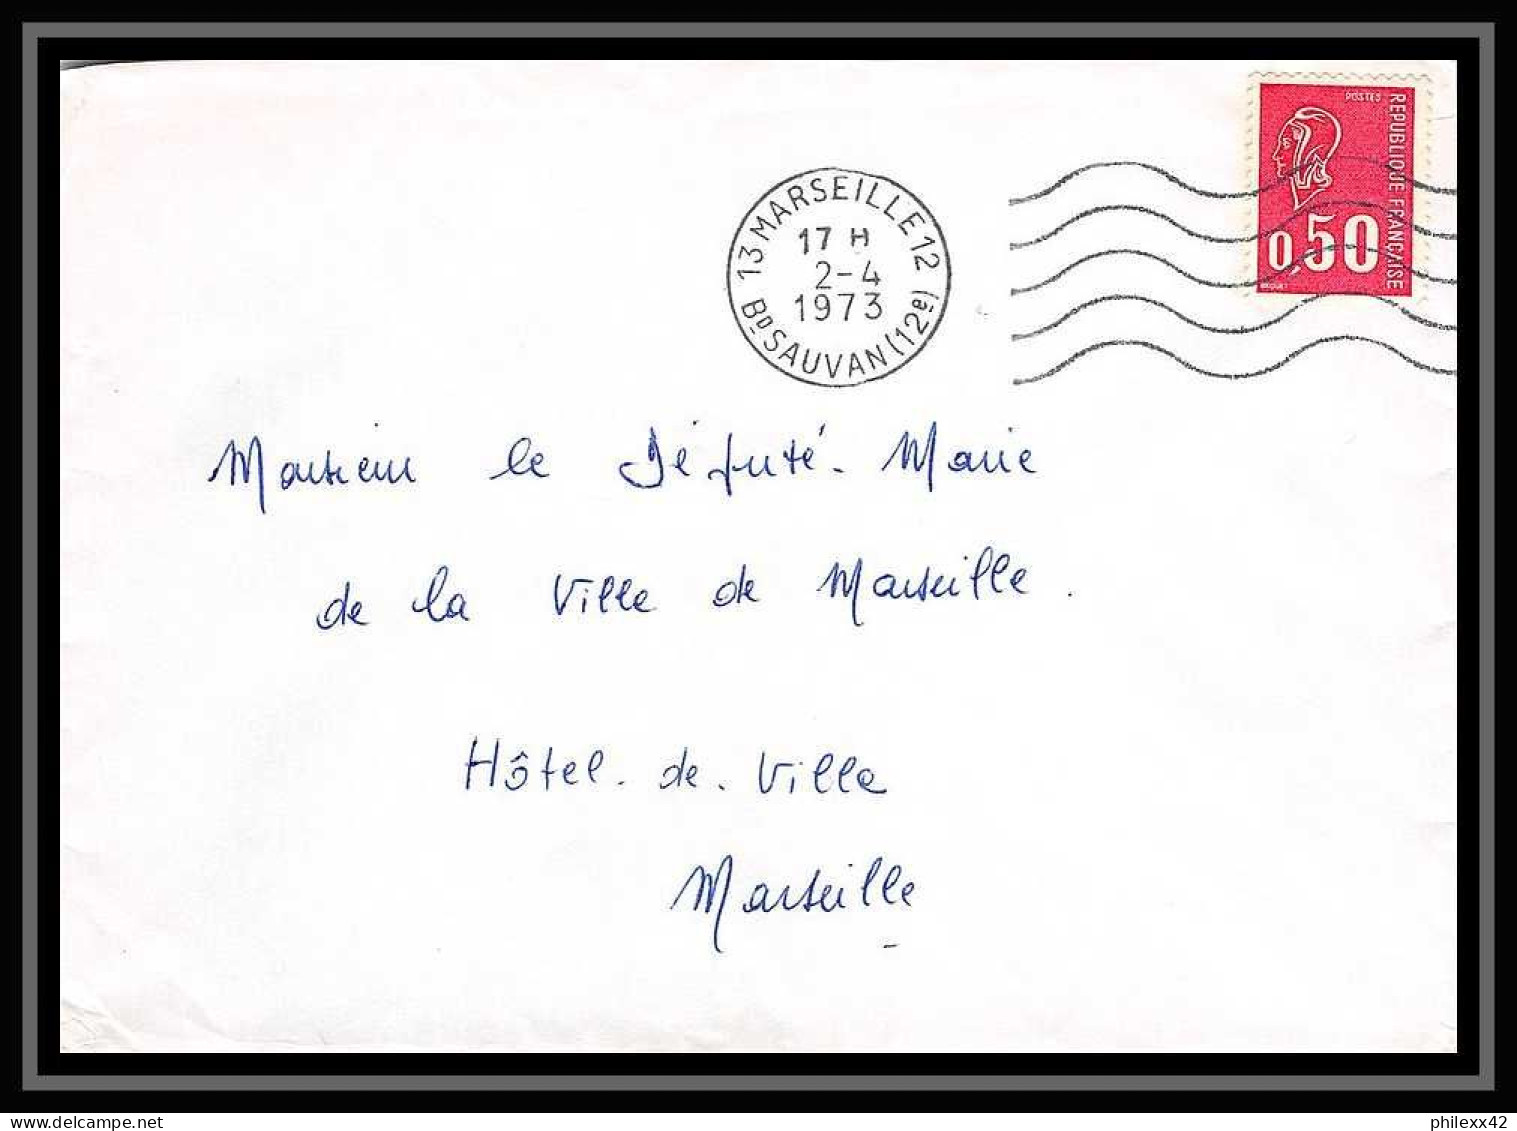 107556 lot de 12 Lettres Bouches du rhone Marseille boulevard de Strasbourg